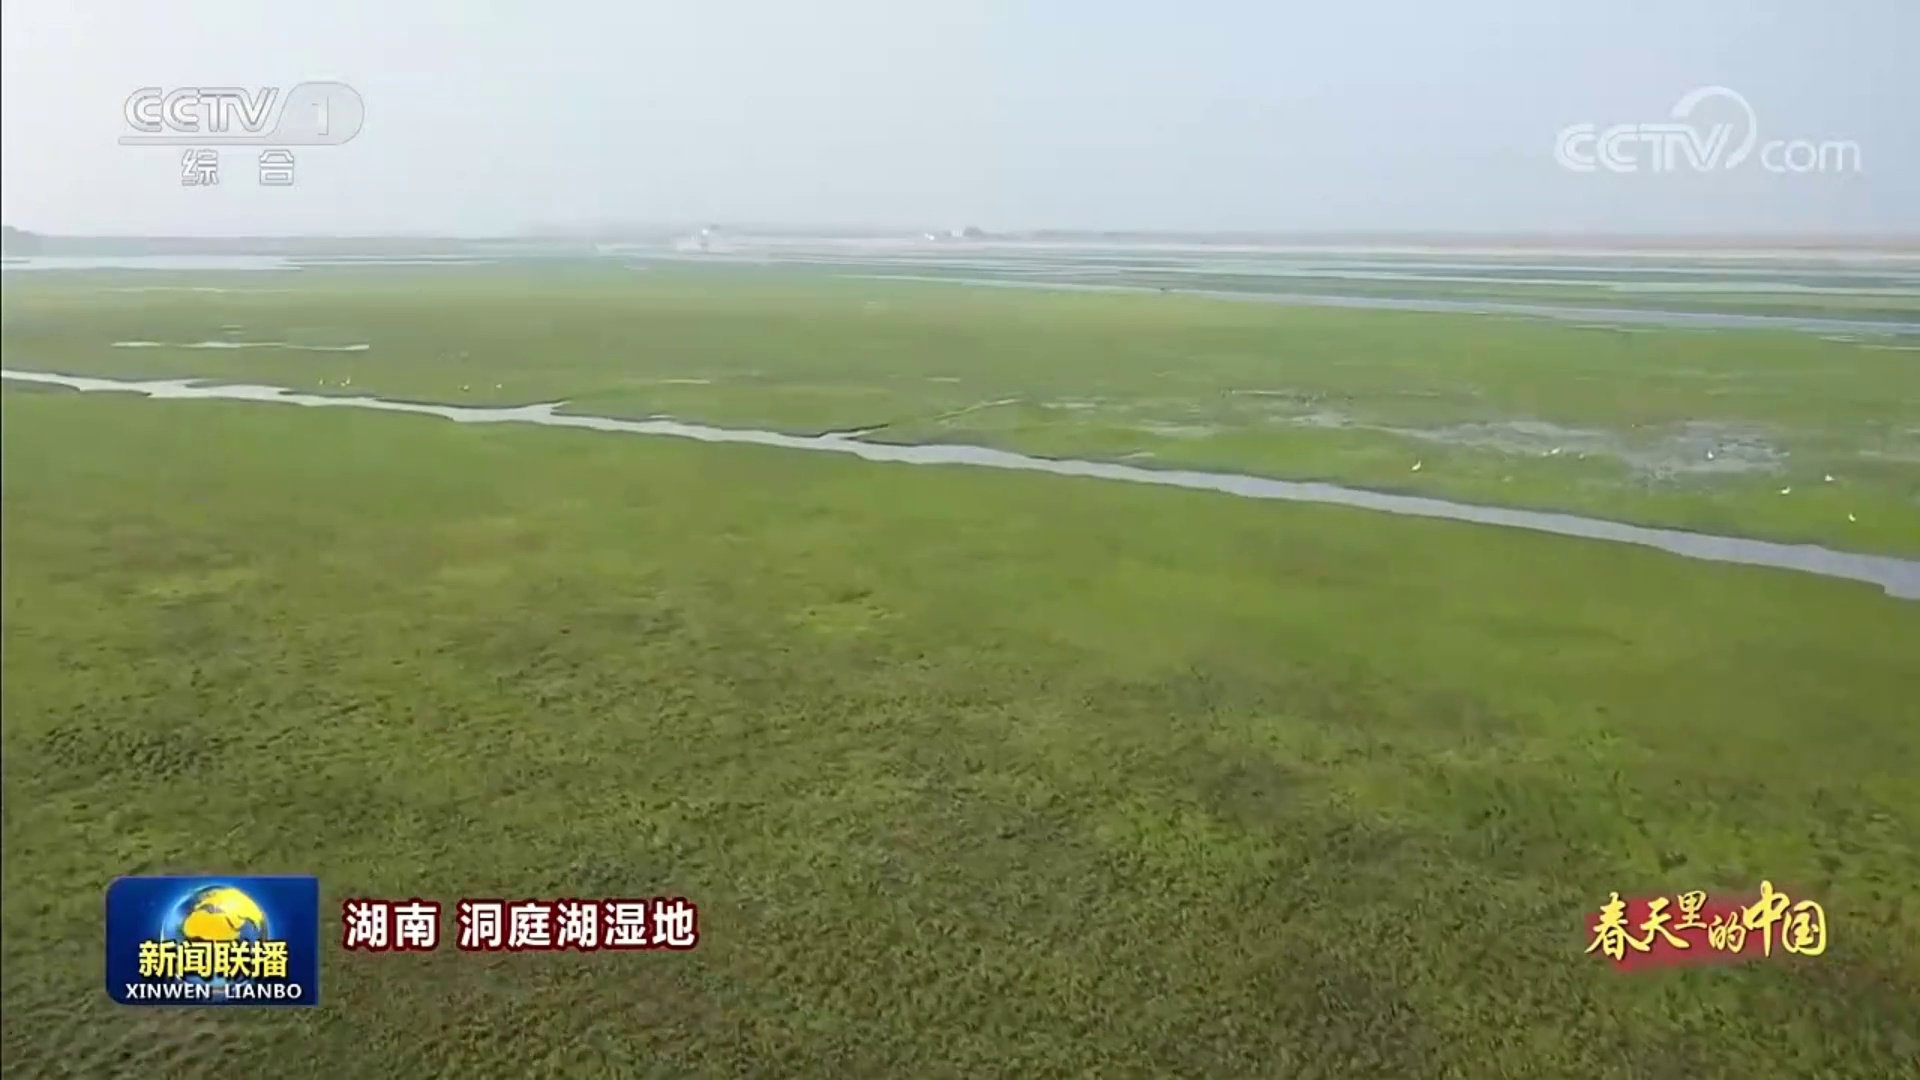 【央视?新闻联播】春天里的中国 洞庭湖湿地候鸟蹁跹